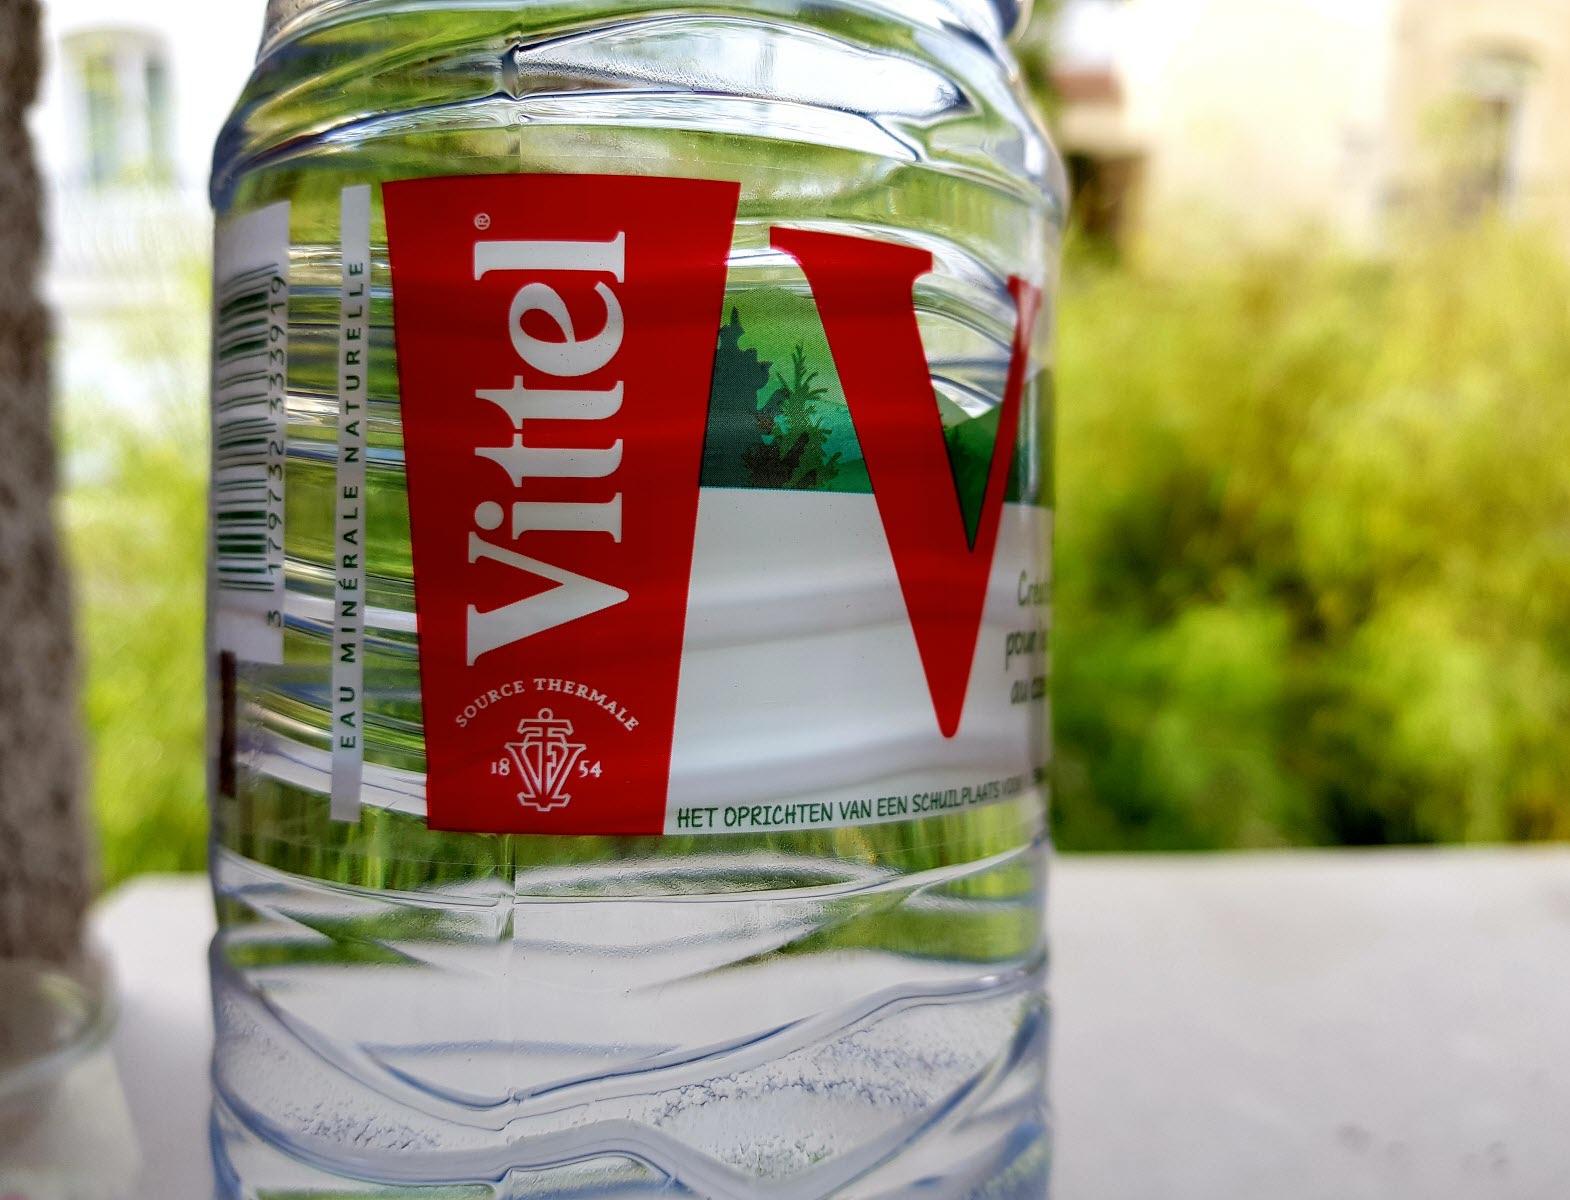 Продуктовые компании Vittel и Bite заявили о переходе на recycle-упаковку